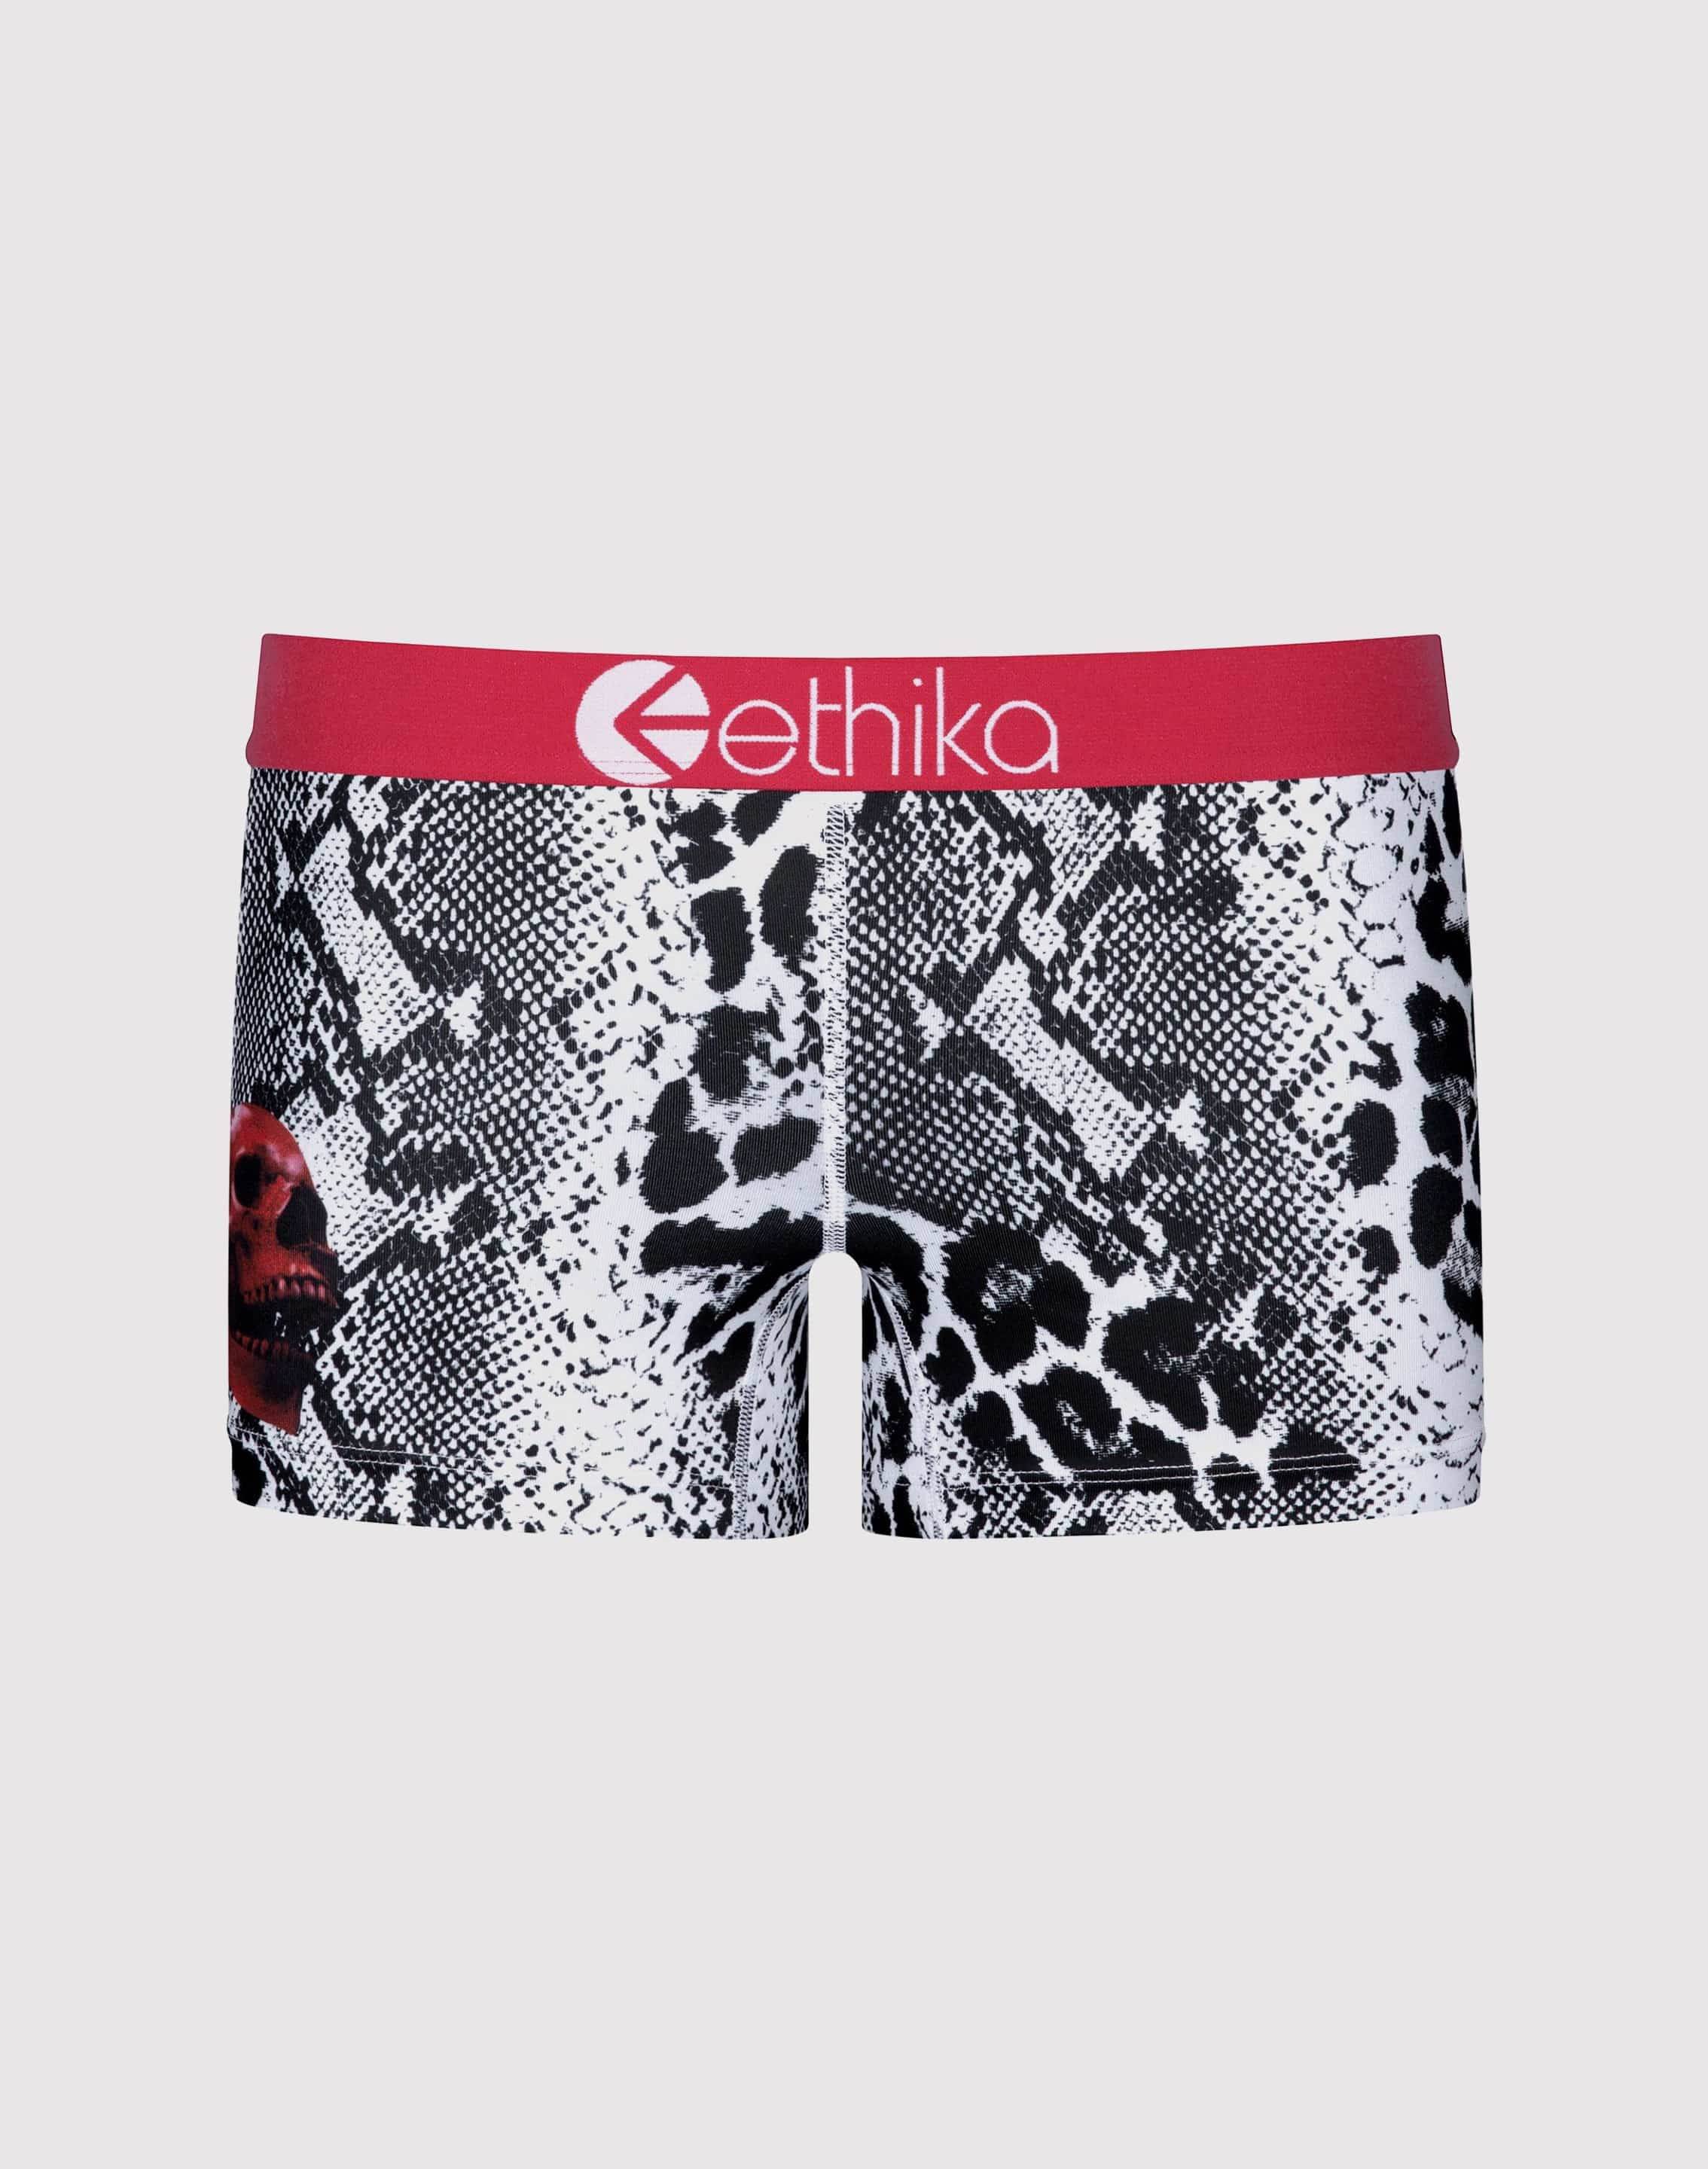 Ethika Leopard Strike Boy Shorts